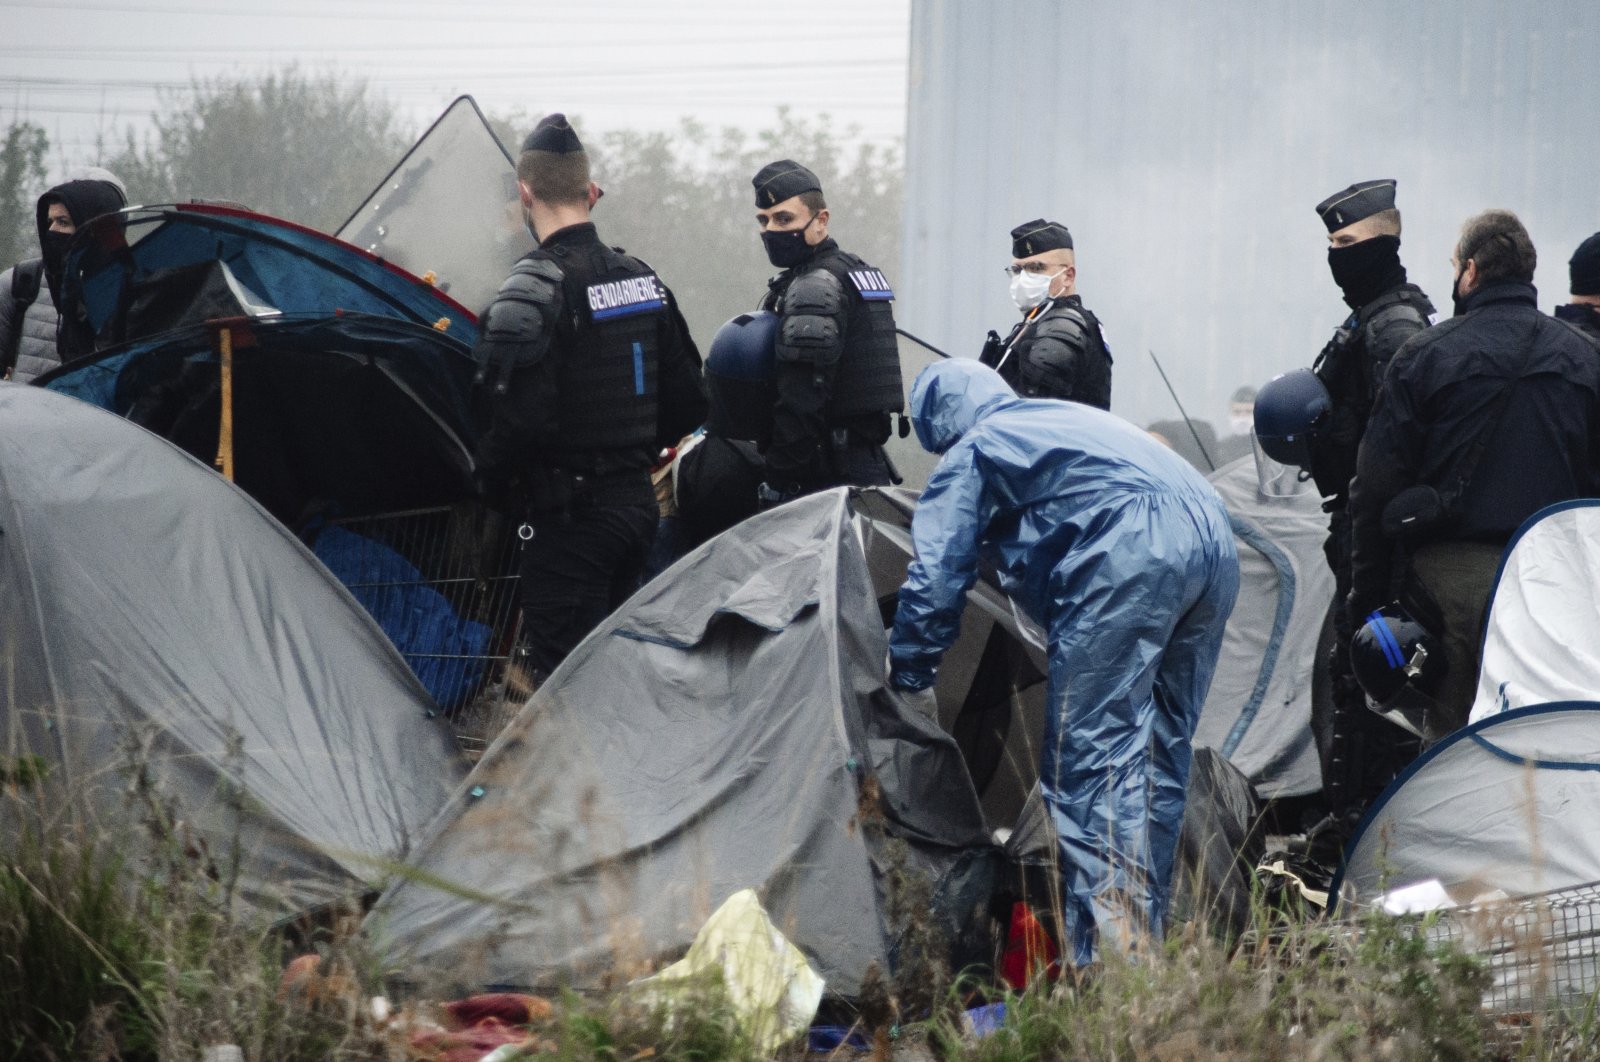 Prancis membersihkan kamp migran tujuan Inggris yang menampung 1.500 pengungsi di Dunkirk